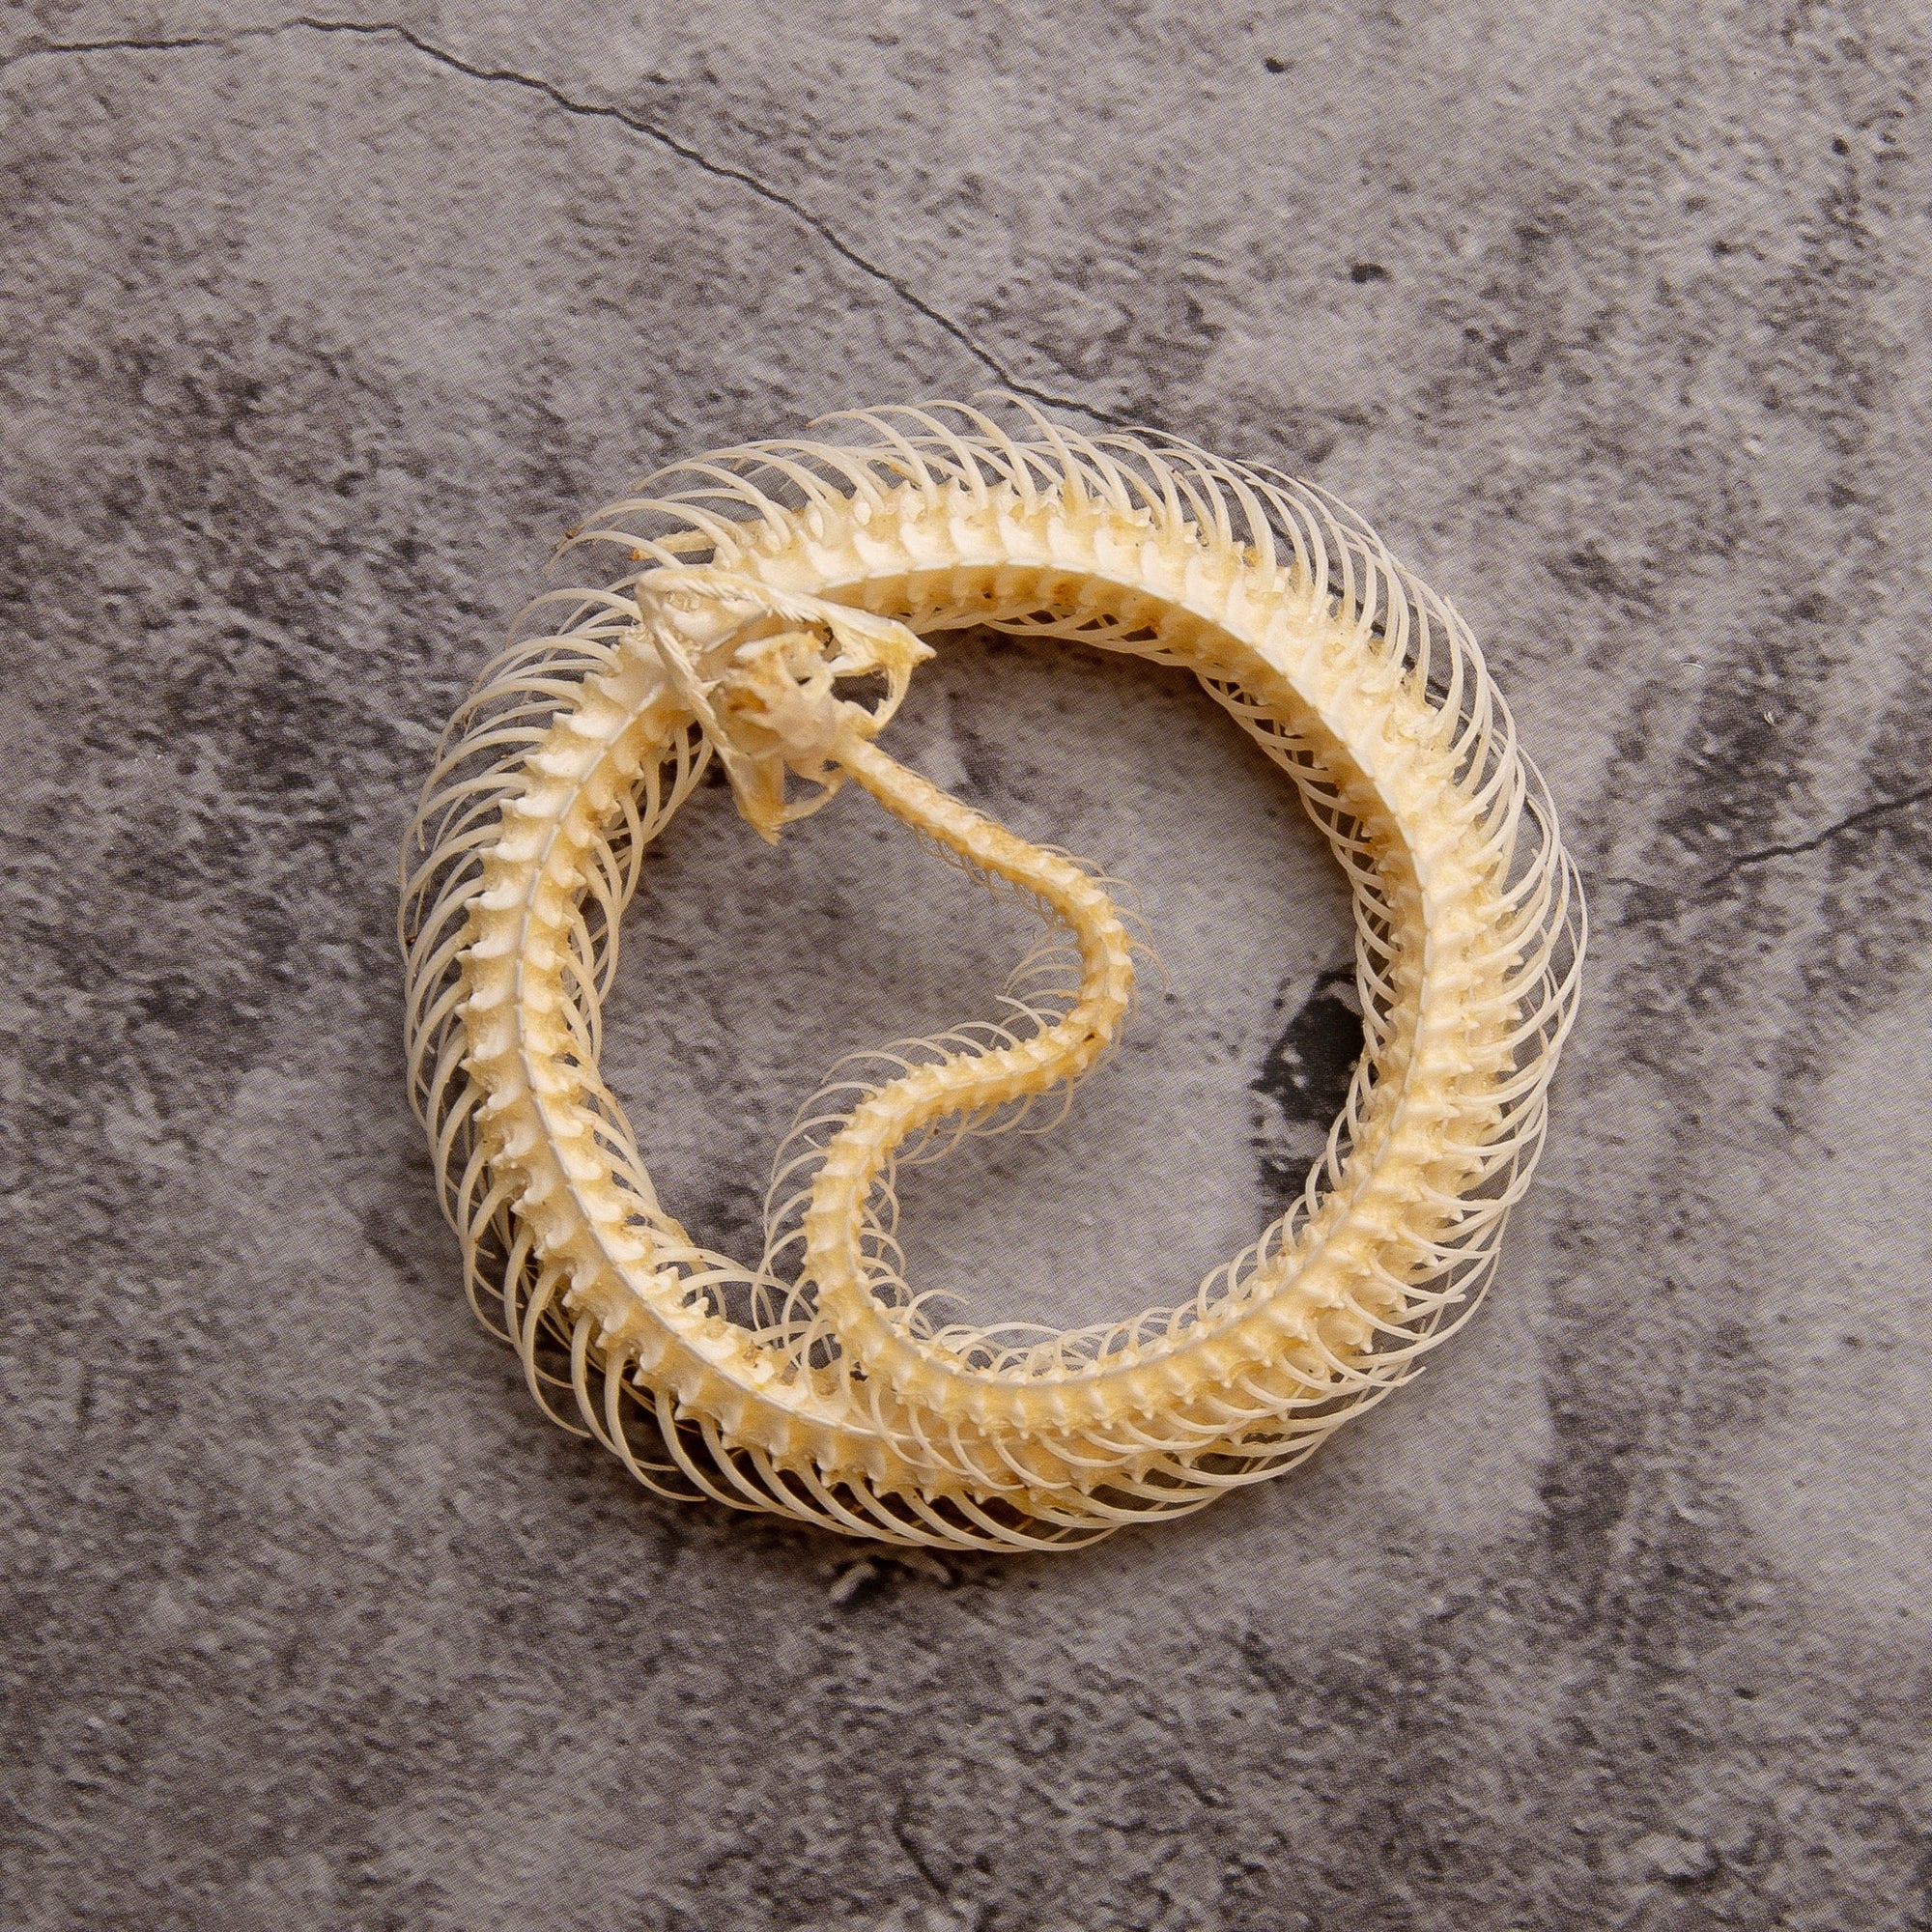 Striped Keelback Snake (Xenochrophis vittatus) | A1 Coiled Skeleton Specimen